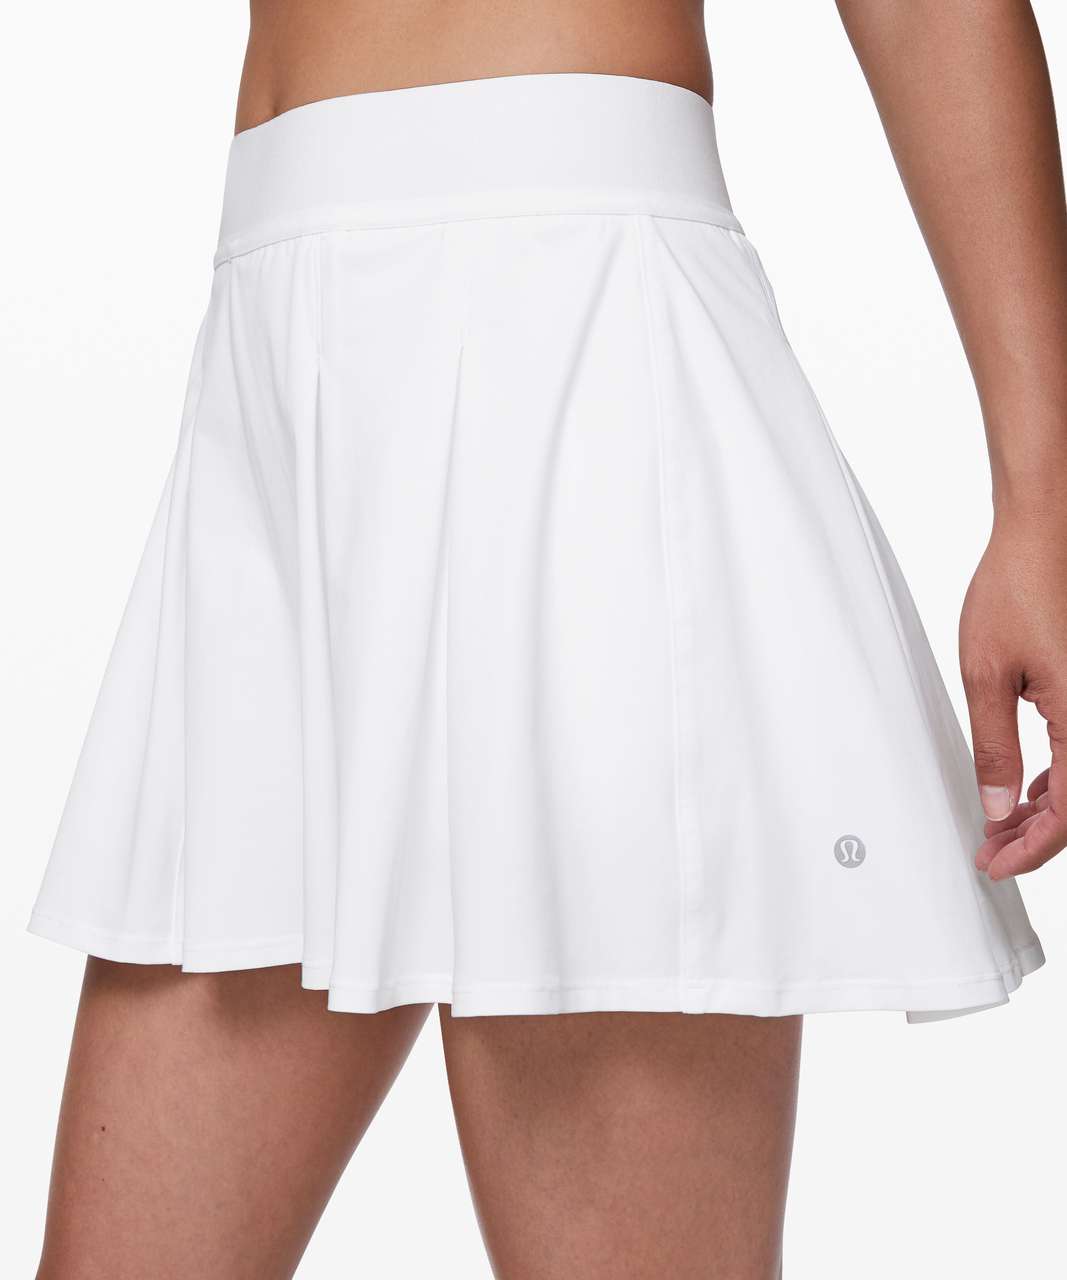 Lululemon Tennis Time Skirt 15" - White